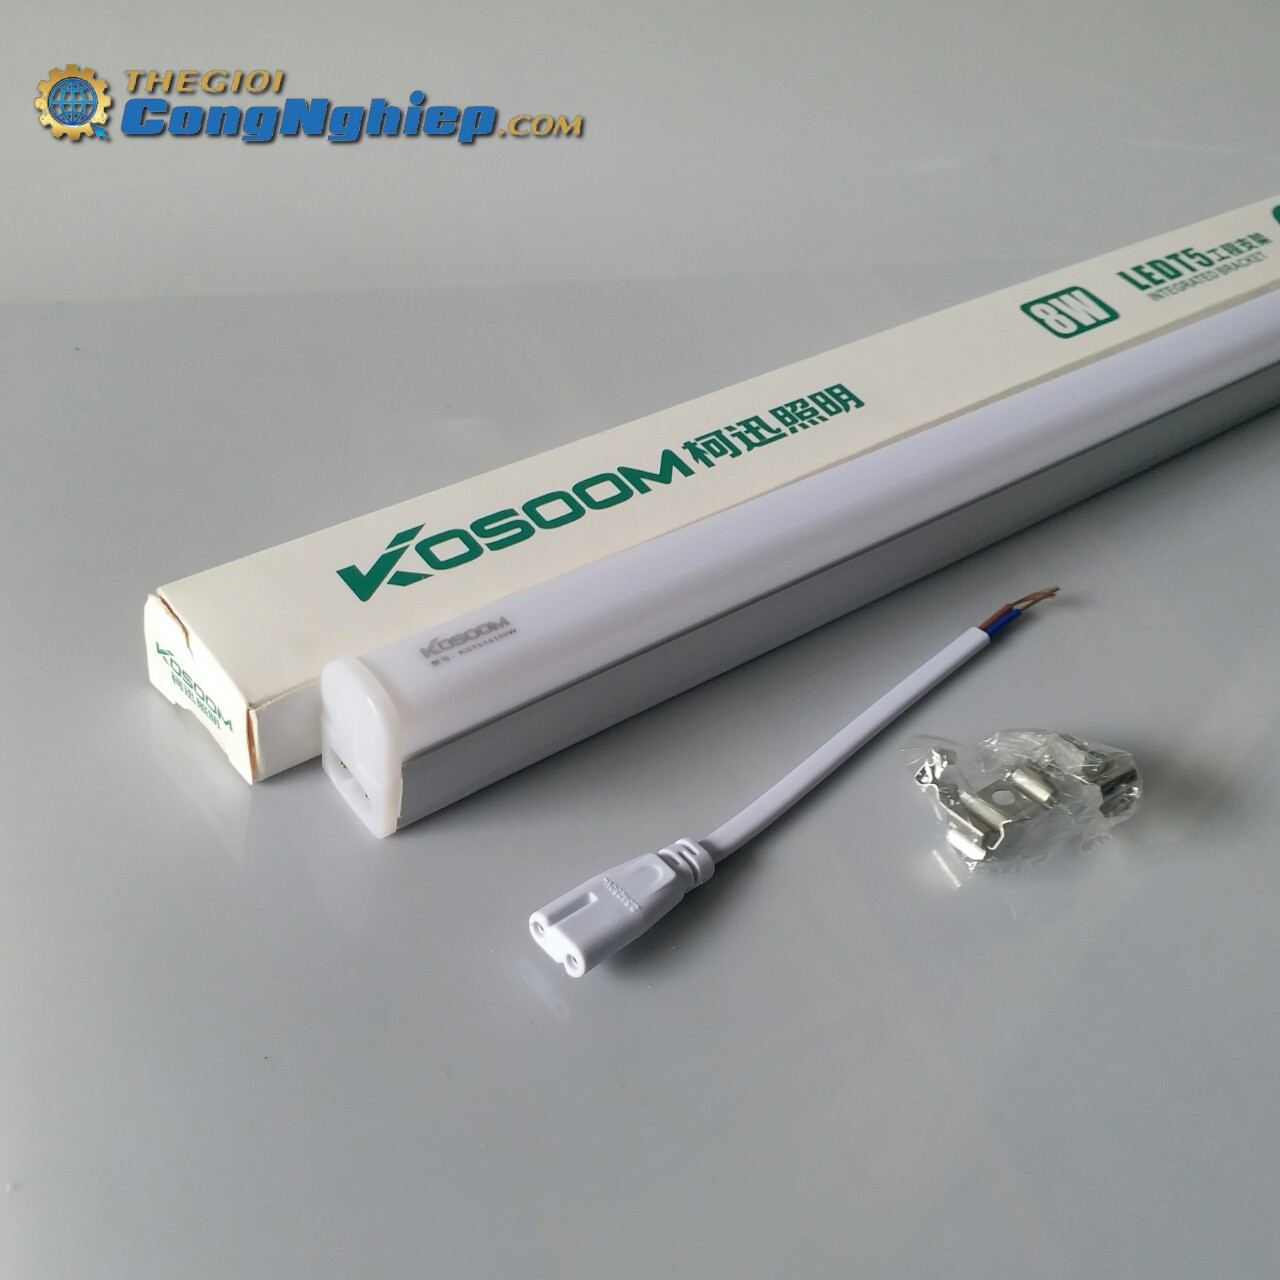 Đèn tuýp LED T5 8W 0.6m Kosoom ánh sáng trắng(6500K), thân nhựa PVC